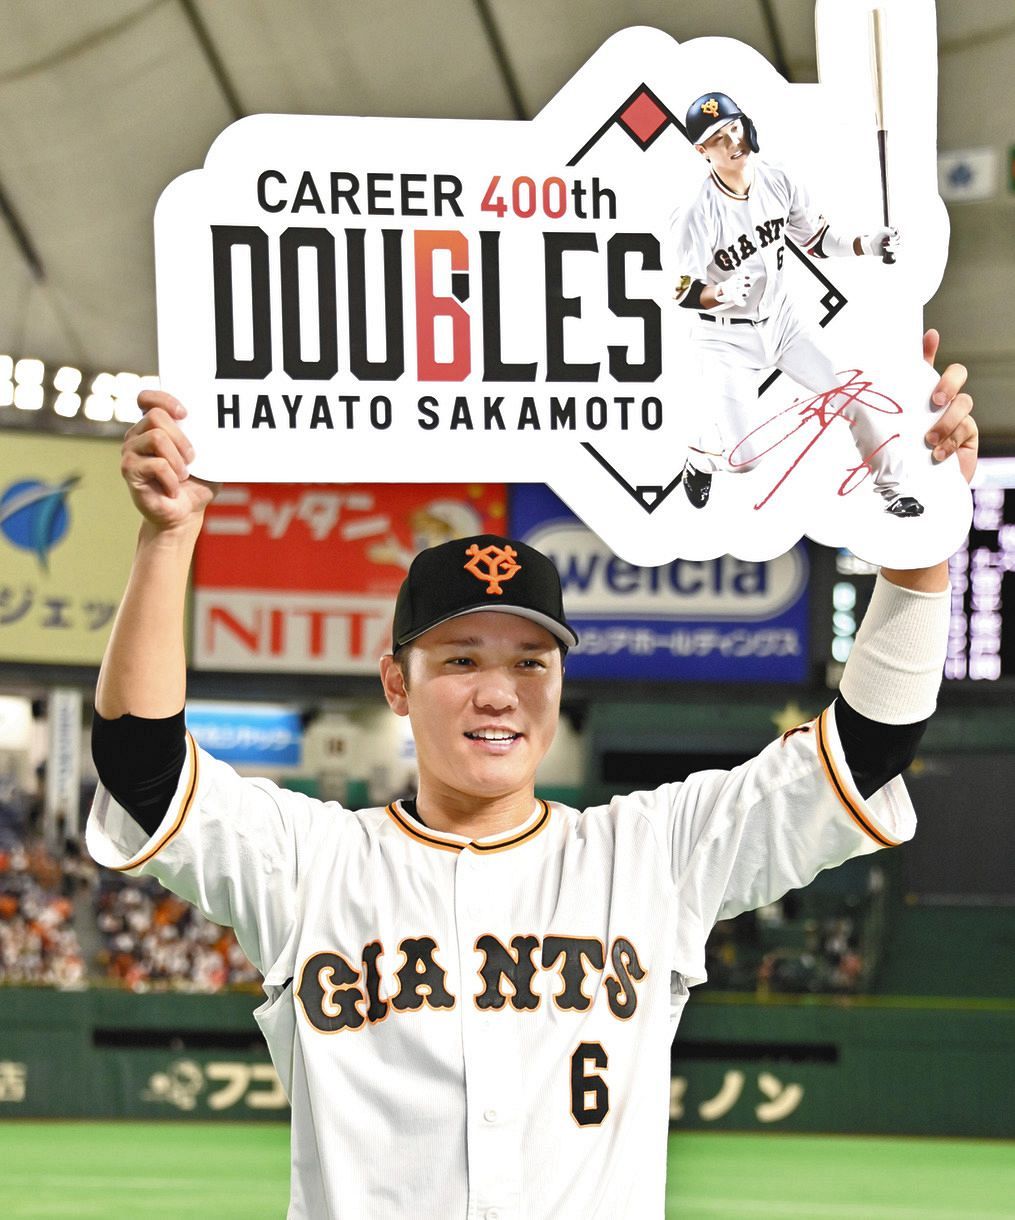 通算400二塁打を達成し、記念のボードを手に笑顔を見せる巨人・坂本